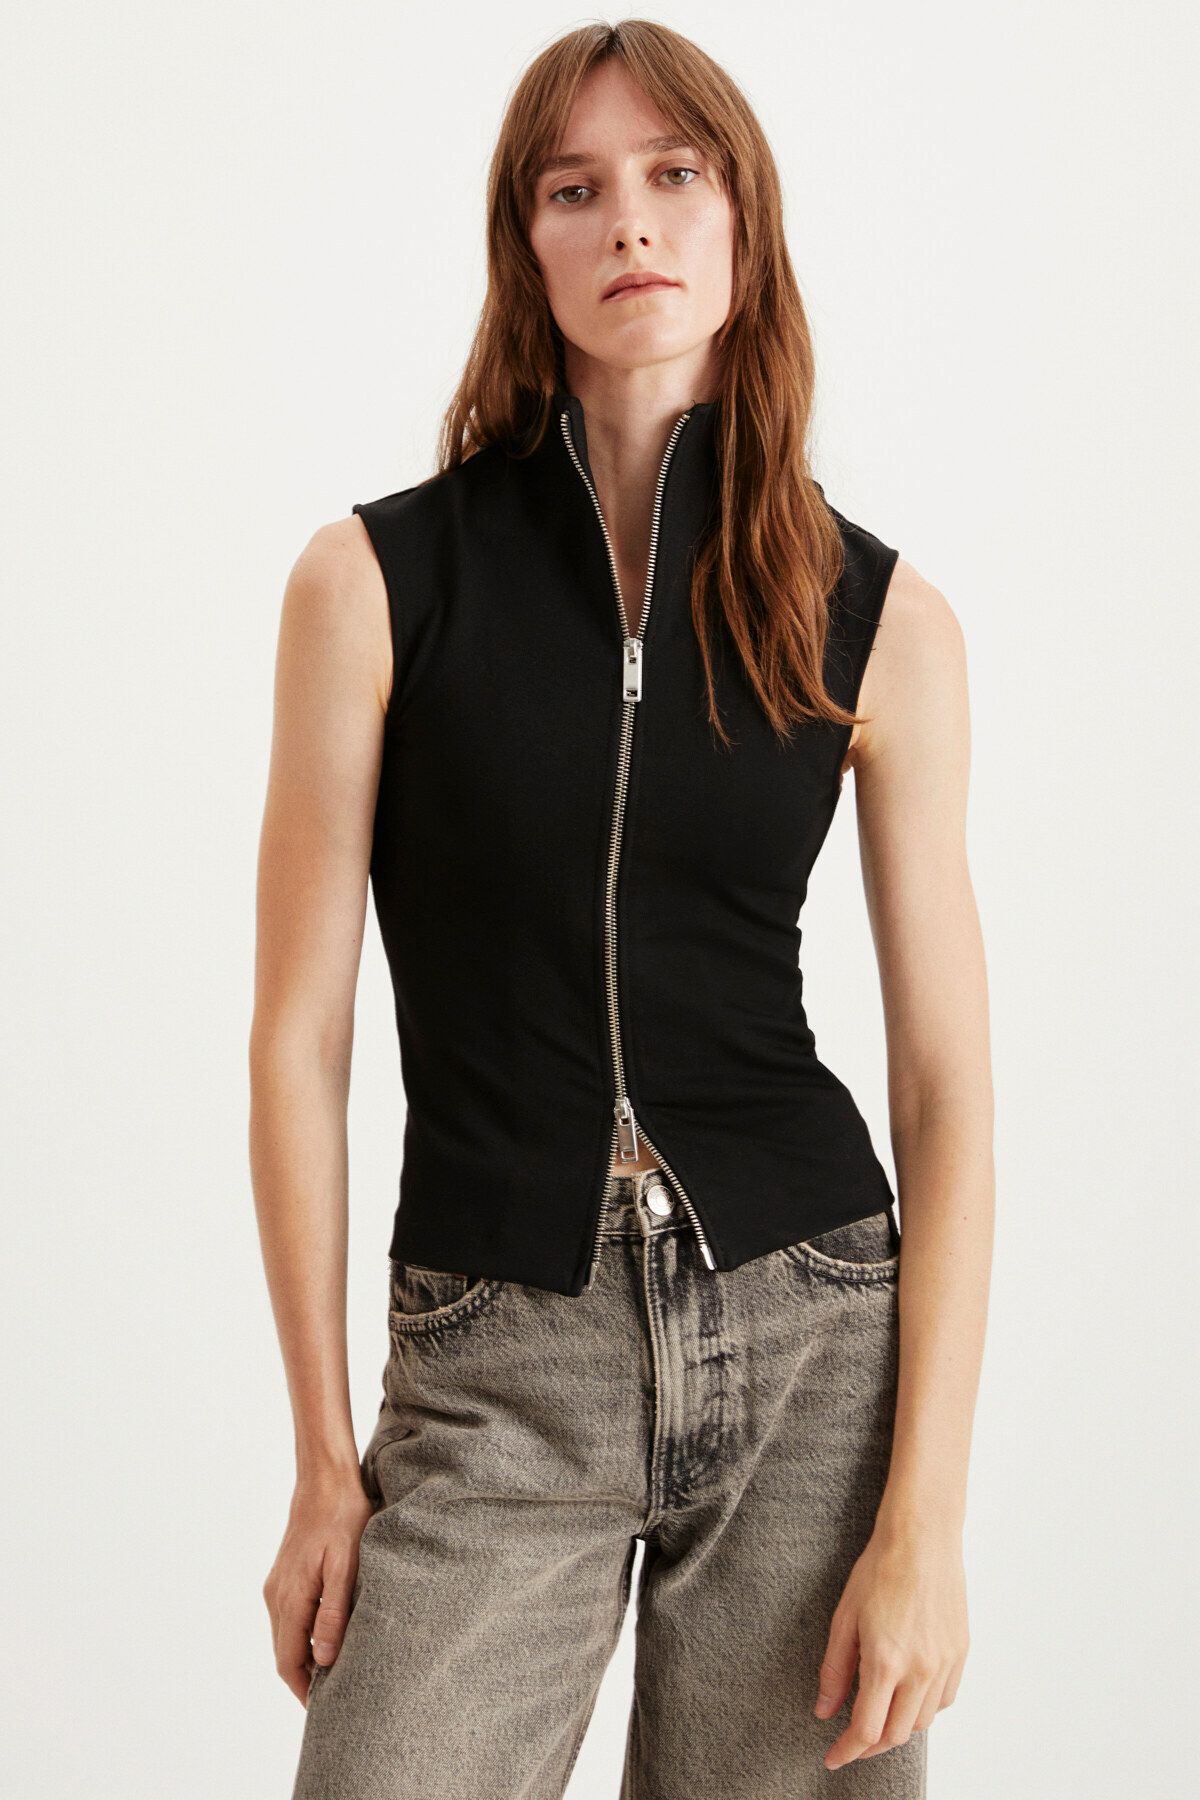 GRIMELANGE Abbet Kadın Slim Fit Örme Dik Yakalı Siyah Bluz